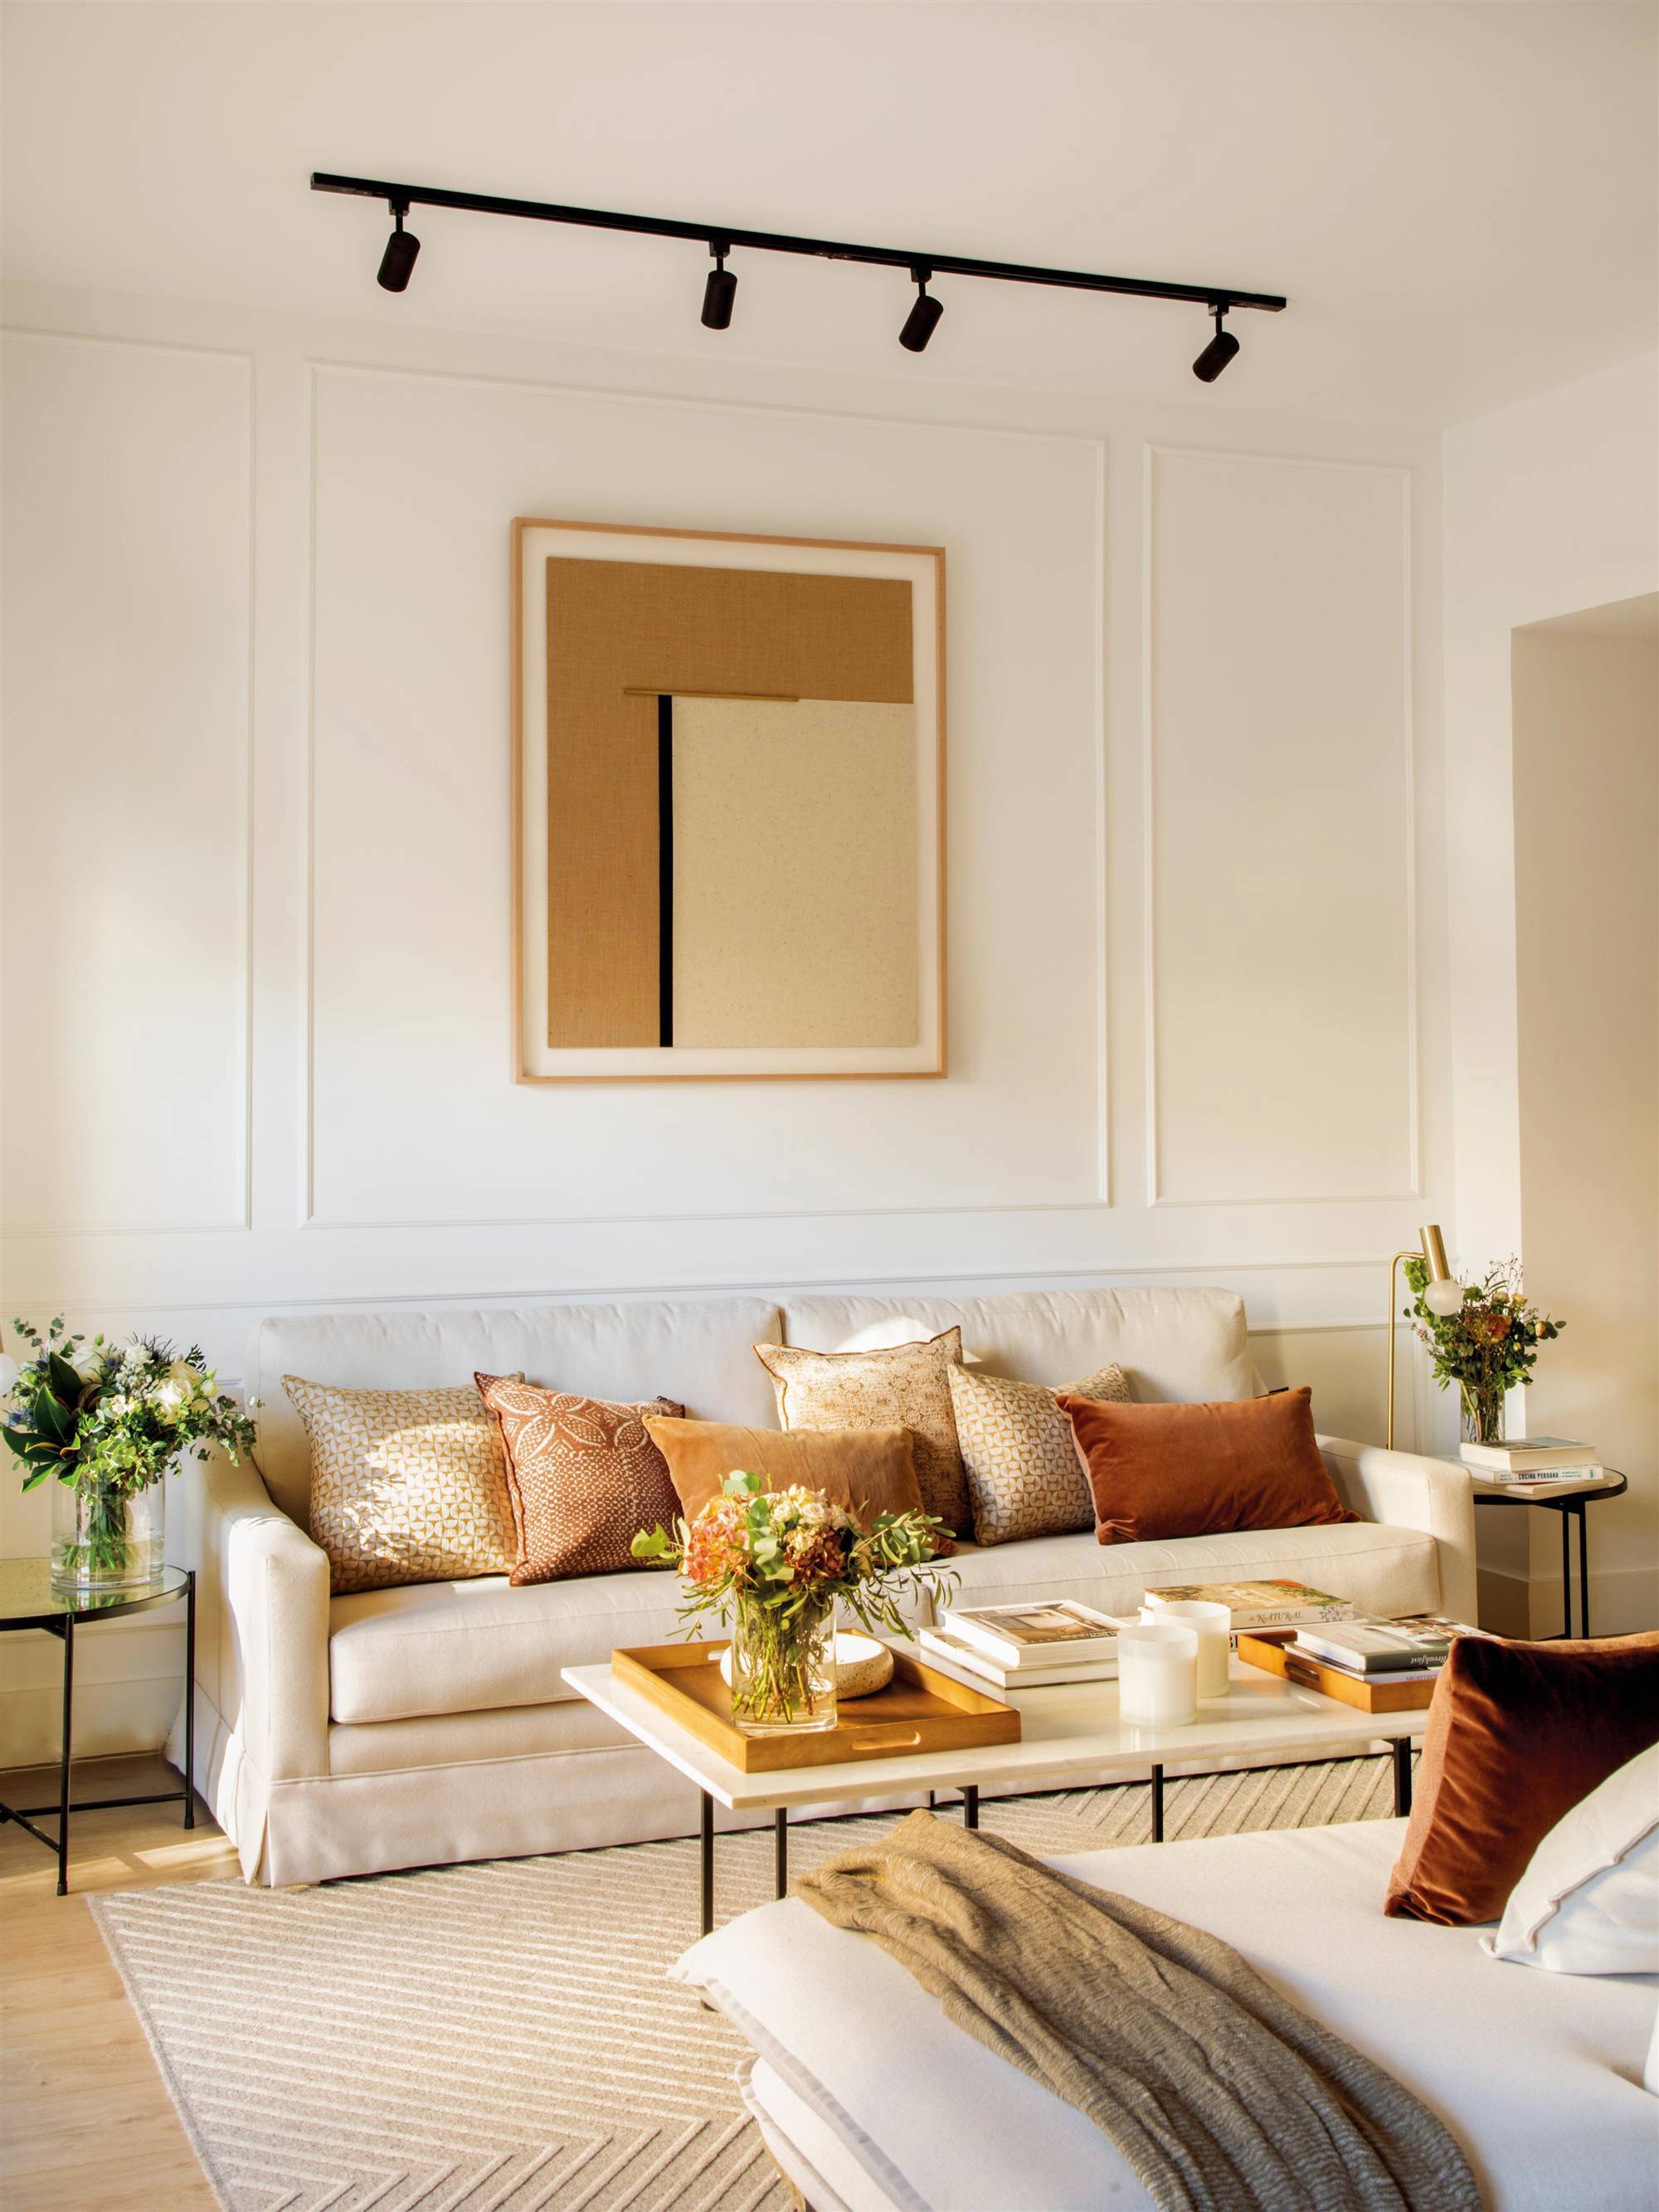 Salón con sofá, molduras en pared y cuadro con iluminación.